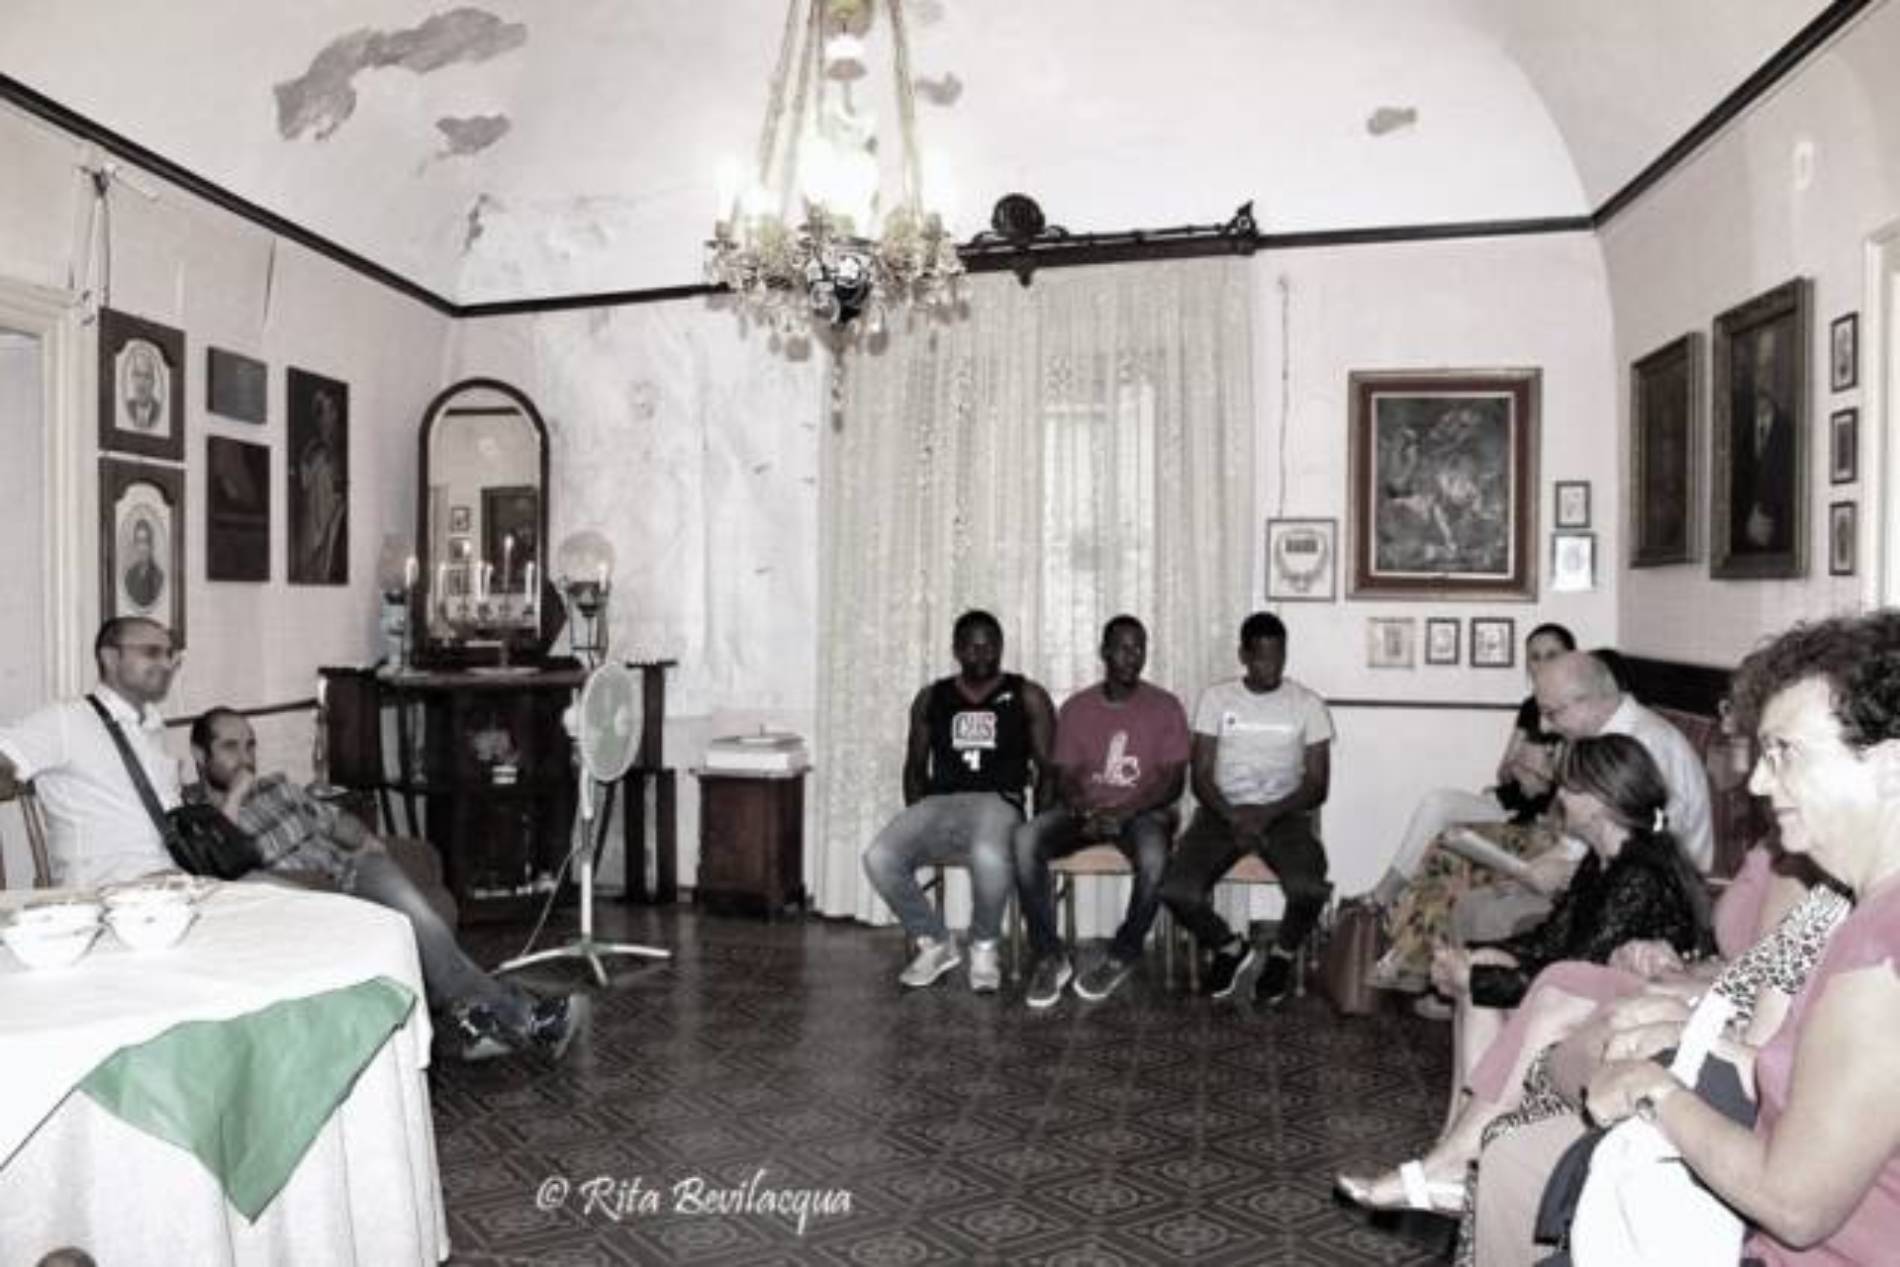 Il Salotto artistico-letterario “Civico 49” incontra culturalmente alcuni giovani immigrati ospitati al CAS di Barrafranca